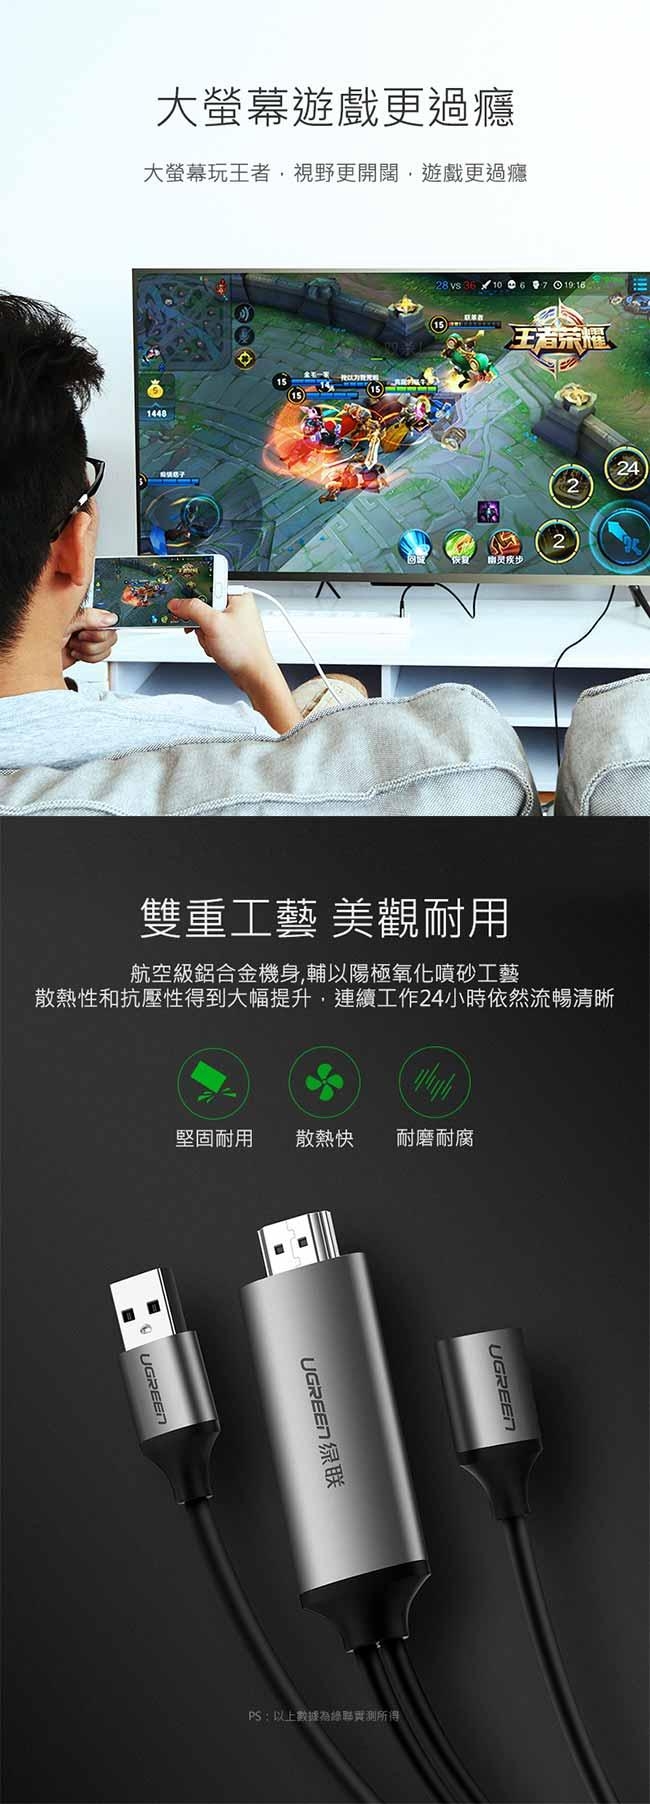 綠聯 iPhone手機平板同步HDMI輸出轉換器